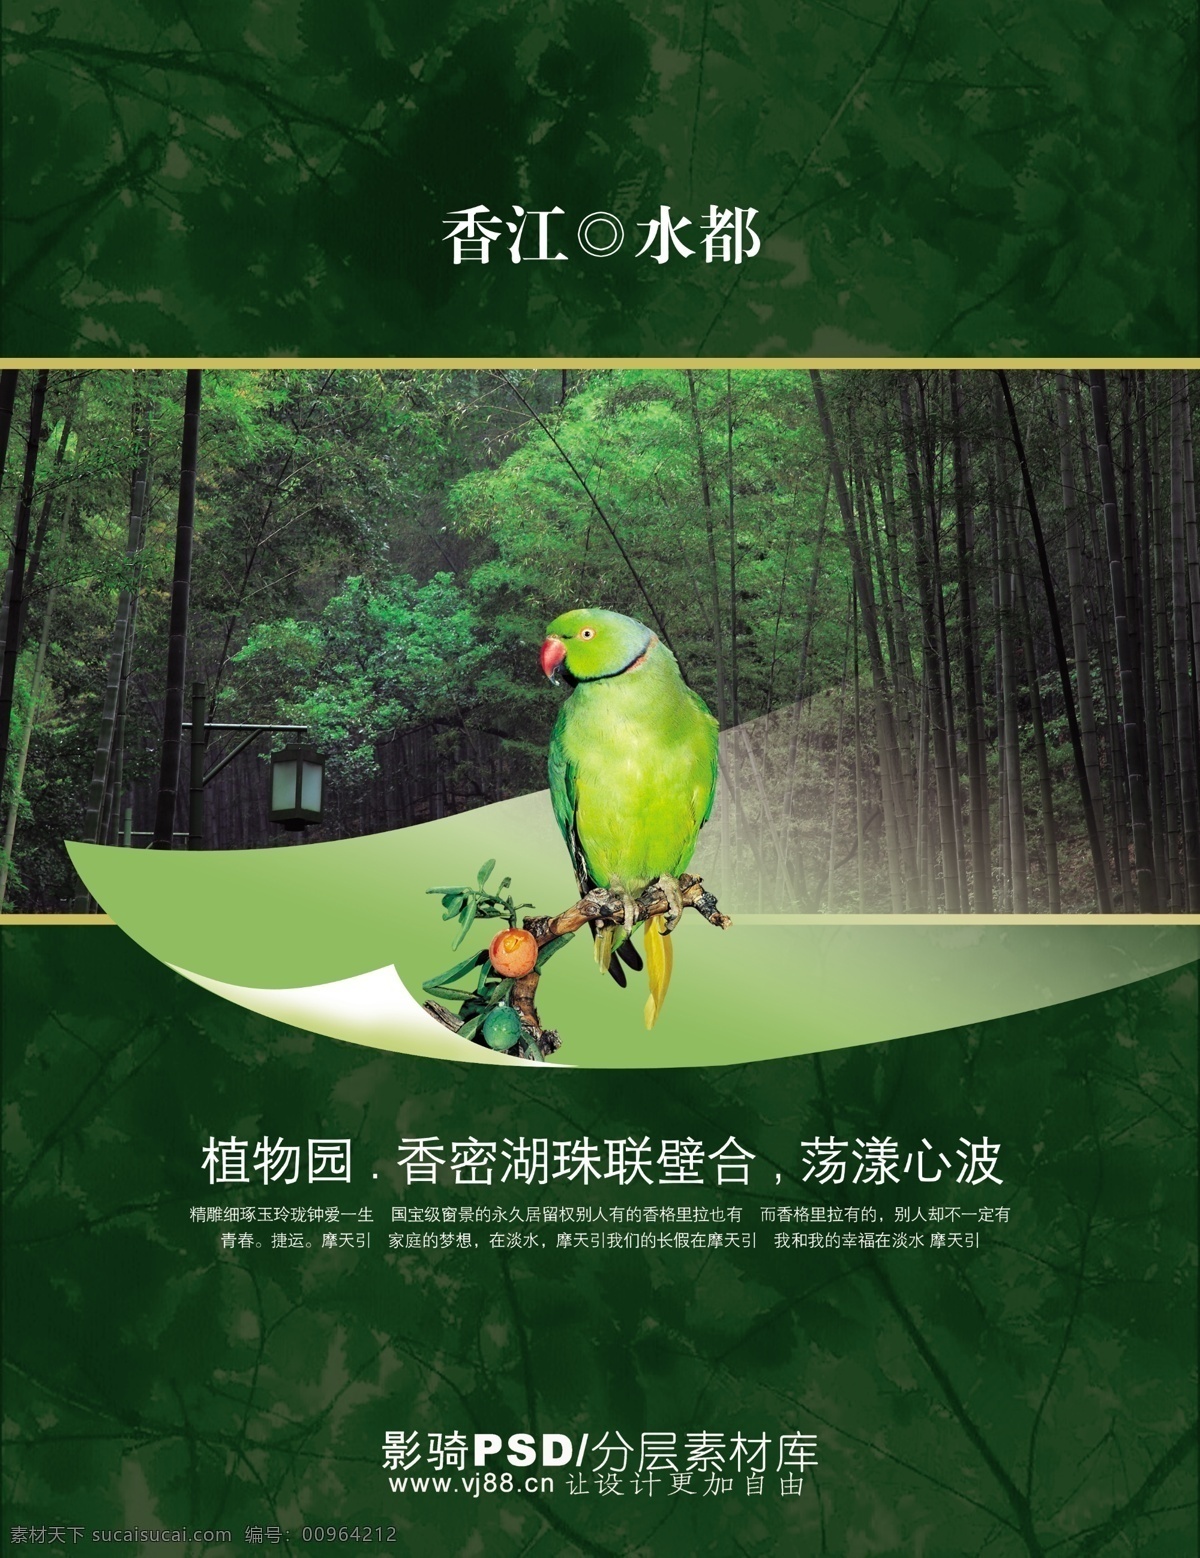 香江 水郡 地产 绿色 鹦鹉 植物园 竹林 psd源文件